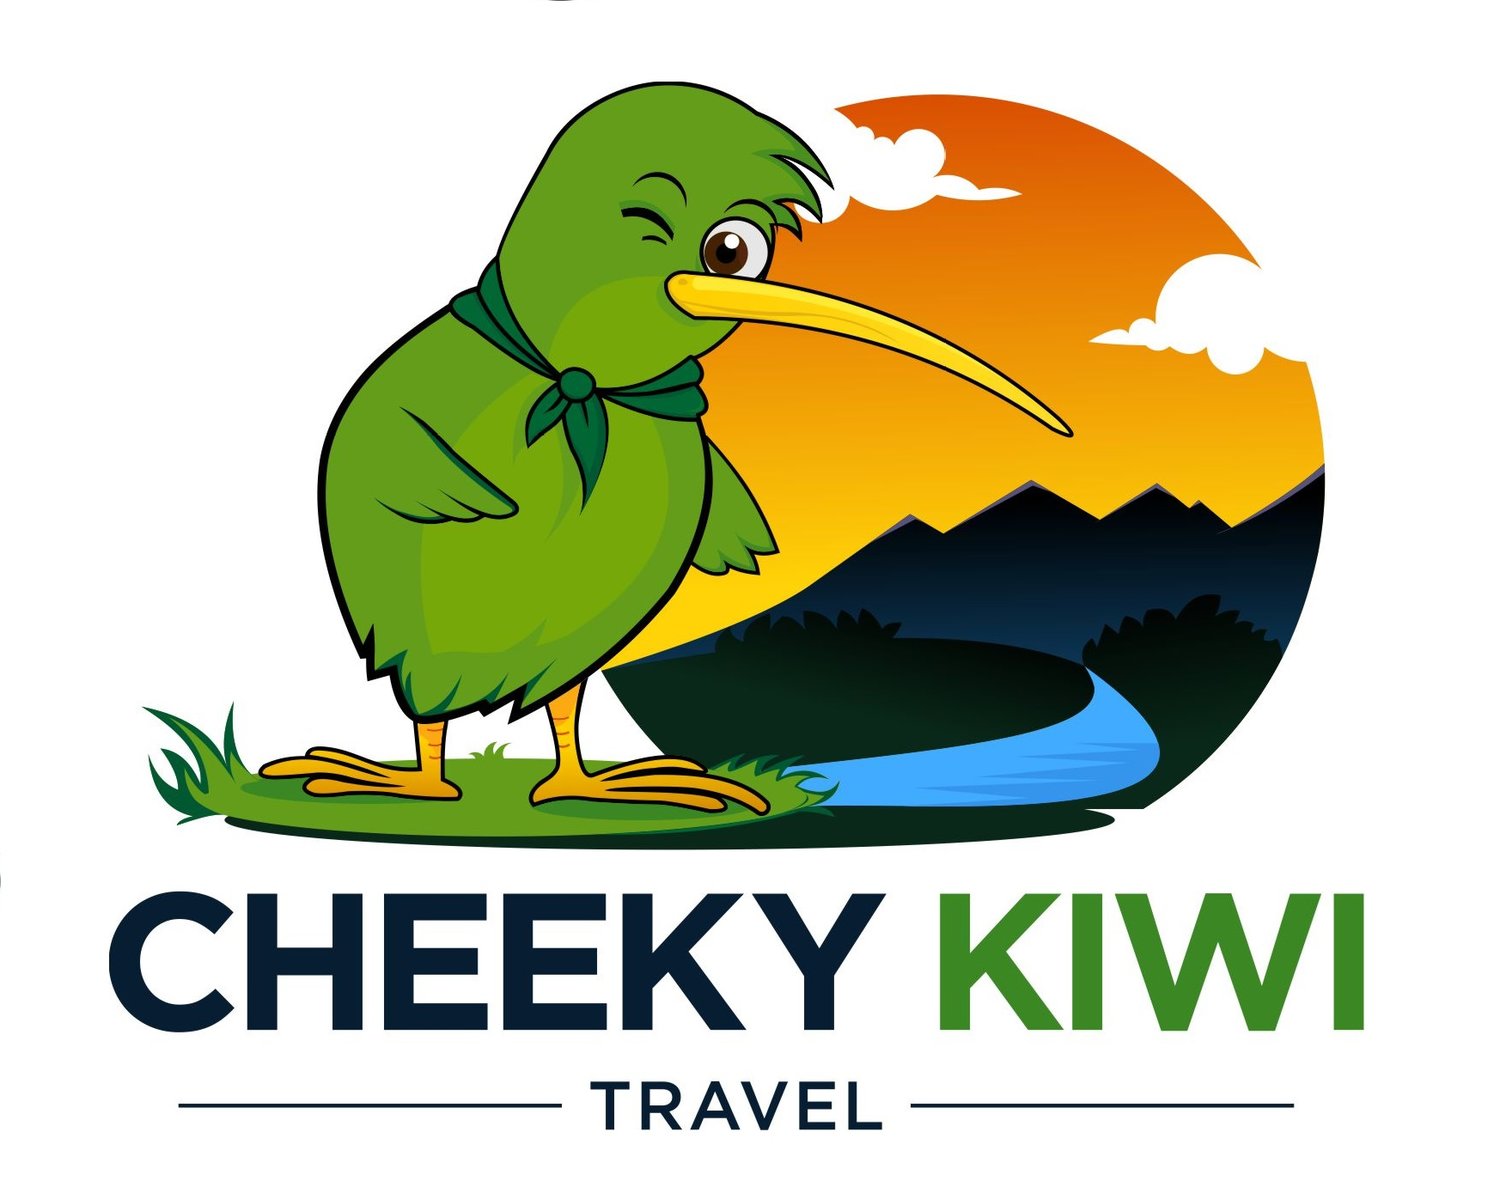 away travel kiwi